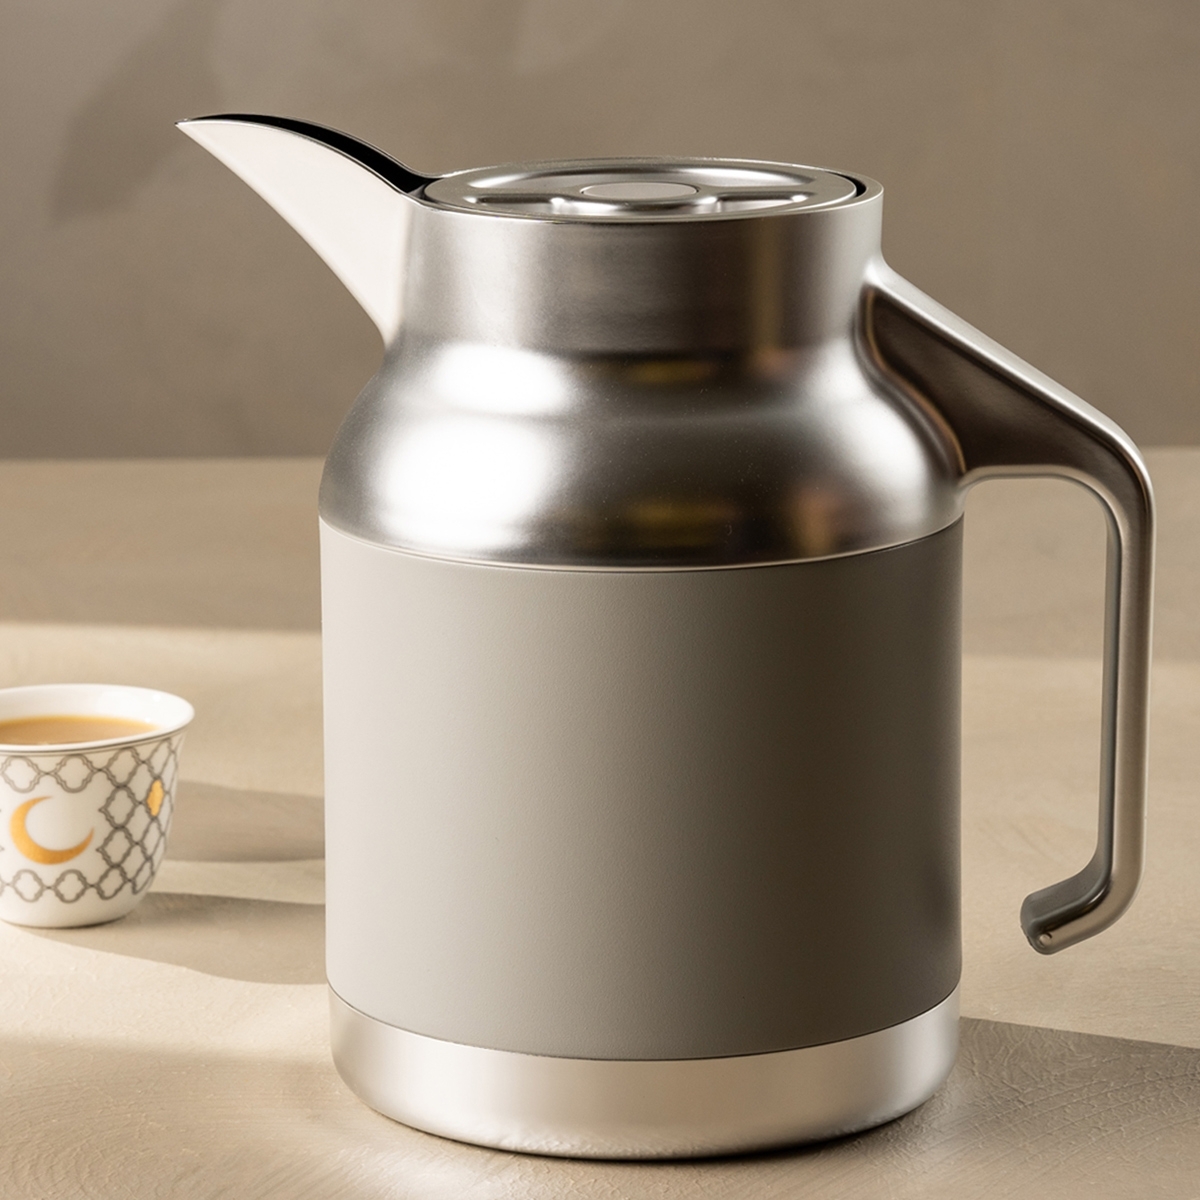 Buy Nova coffee server stainless steel d/w silver & grey 1. 5 ltr in Kuwait